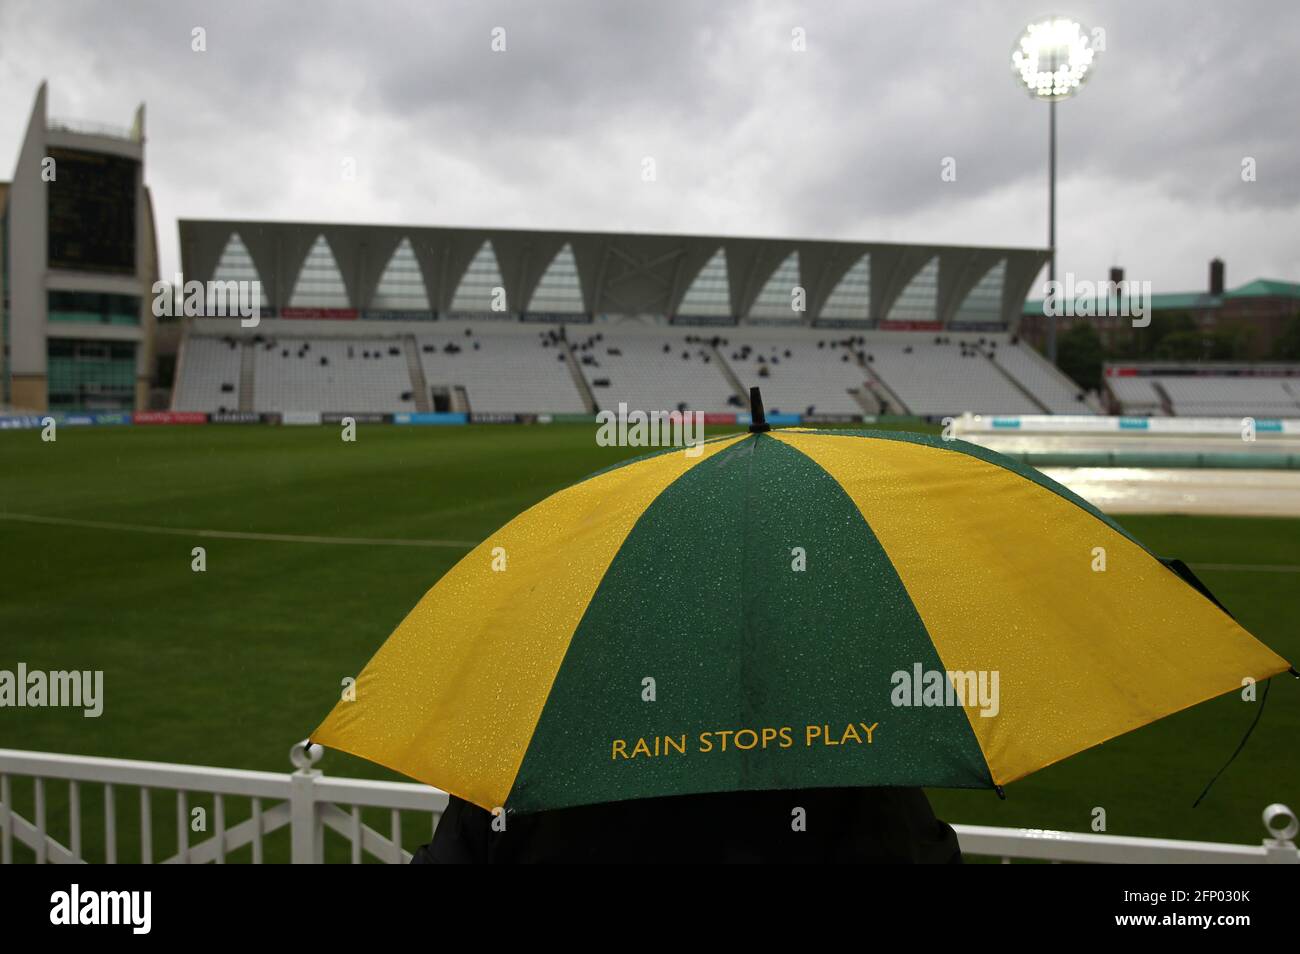 Un espectador se protege bajo una sombrilla de marca Nottinghamshire, ya que las paradas de lluvia juegan durante el primer día del partido del VI = Campeonato del Condado de Seguros en Trent Bridge, Nottingham. Fecha de la foto: Jueves 20 de mayo de 2021. Foto de stock